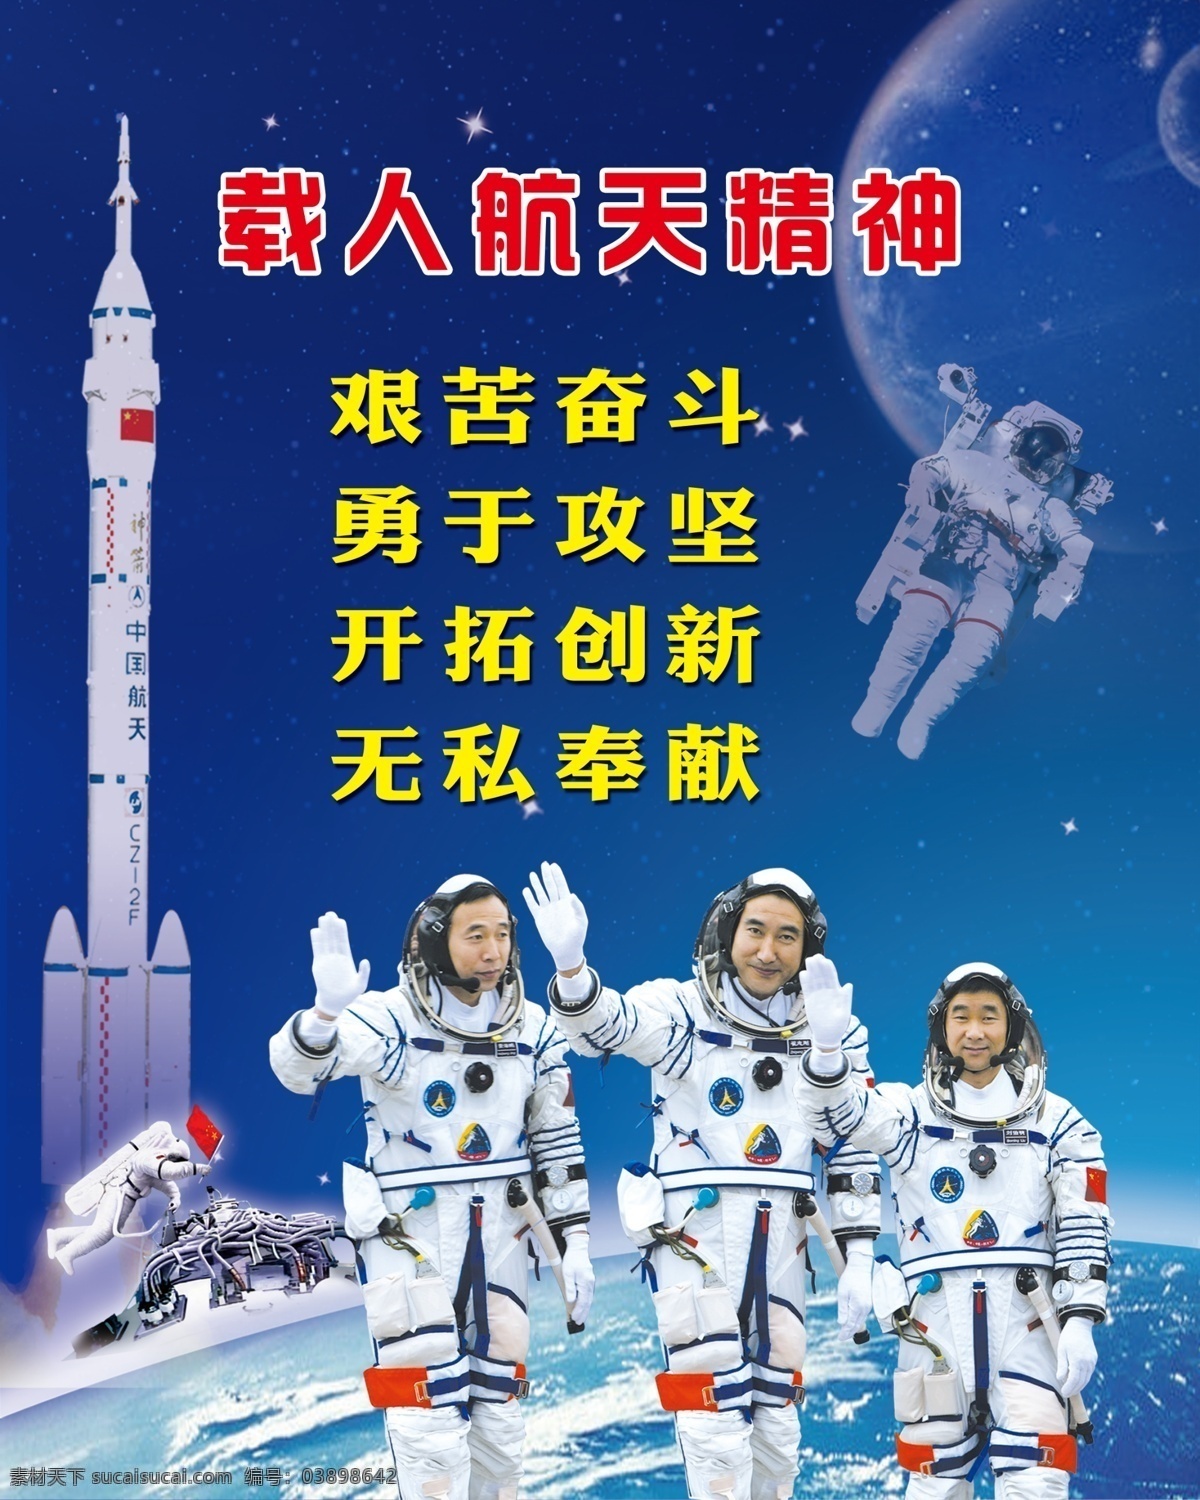 载人航天 神州飞船 中国航天 火箭 航天精神 艰苦奋斗 太空 空间站 宇航员 分层